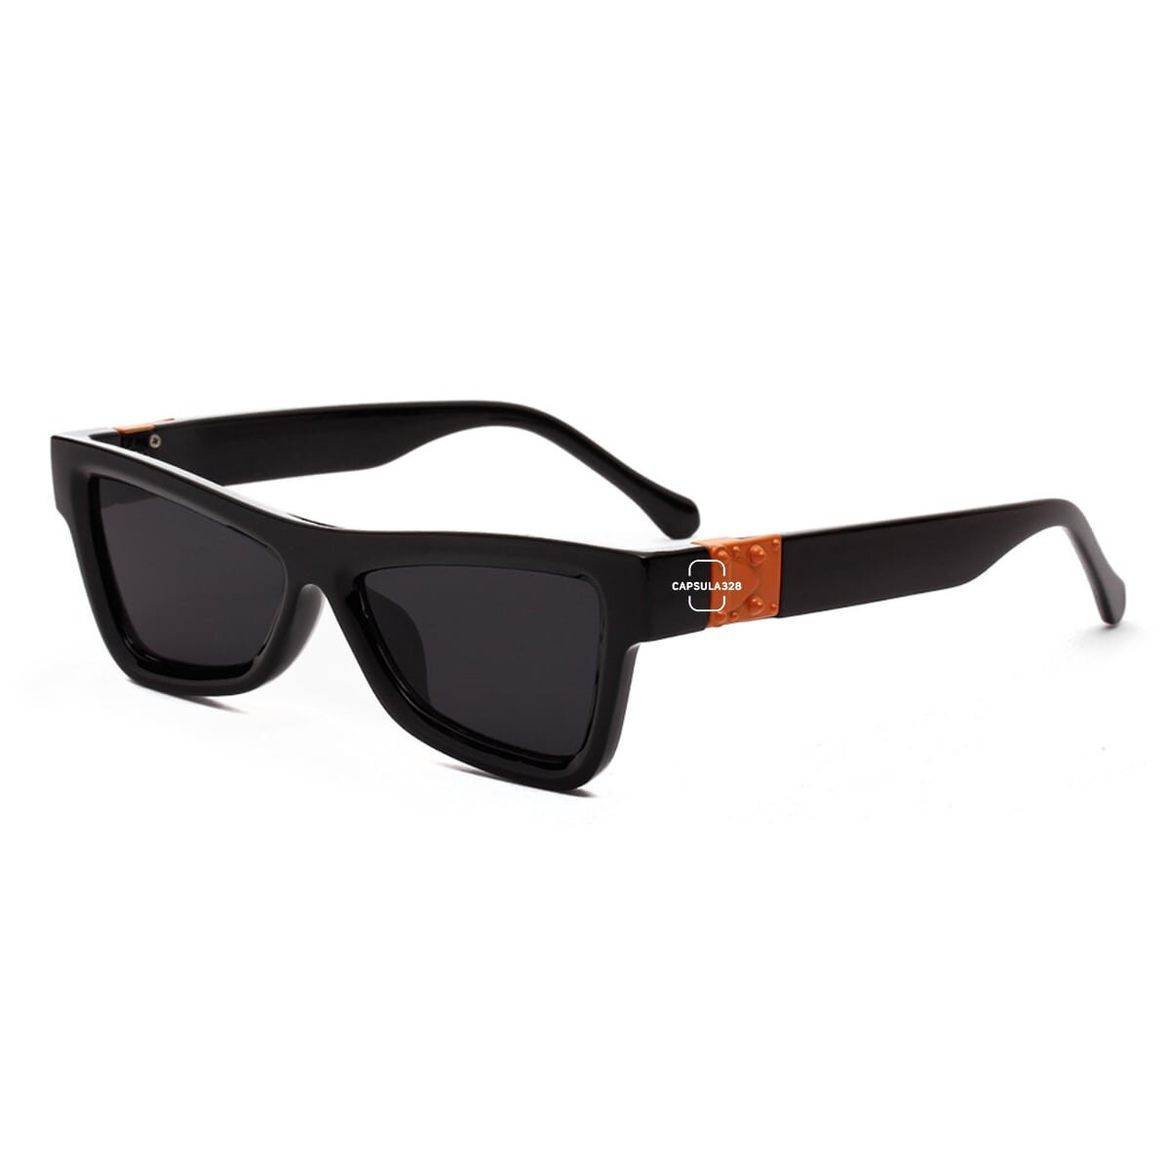 Солнцезащитные очки Flat 2211